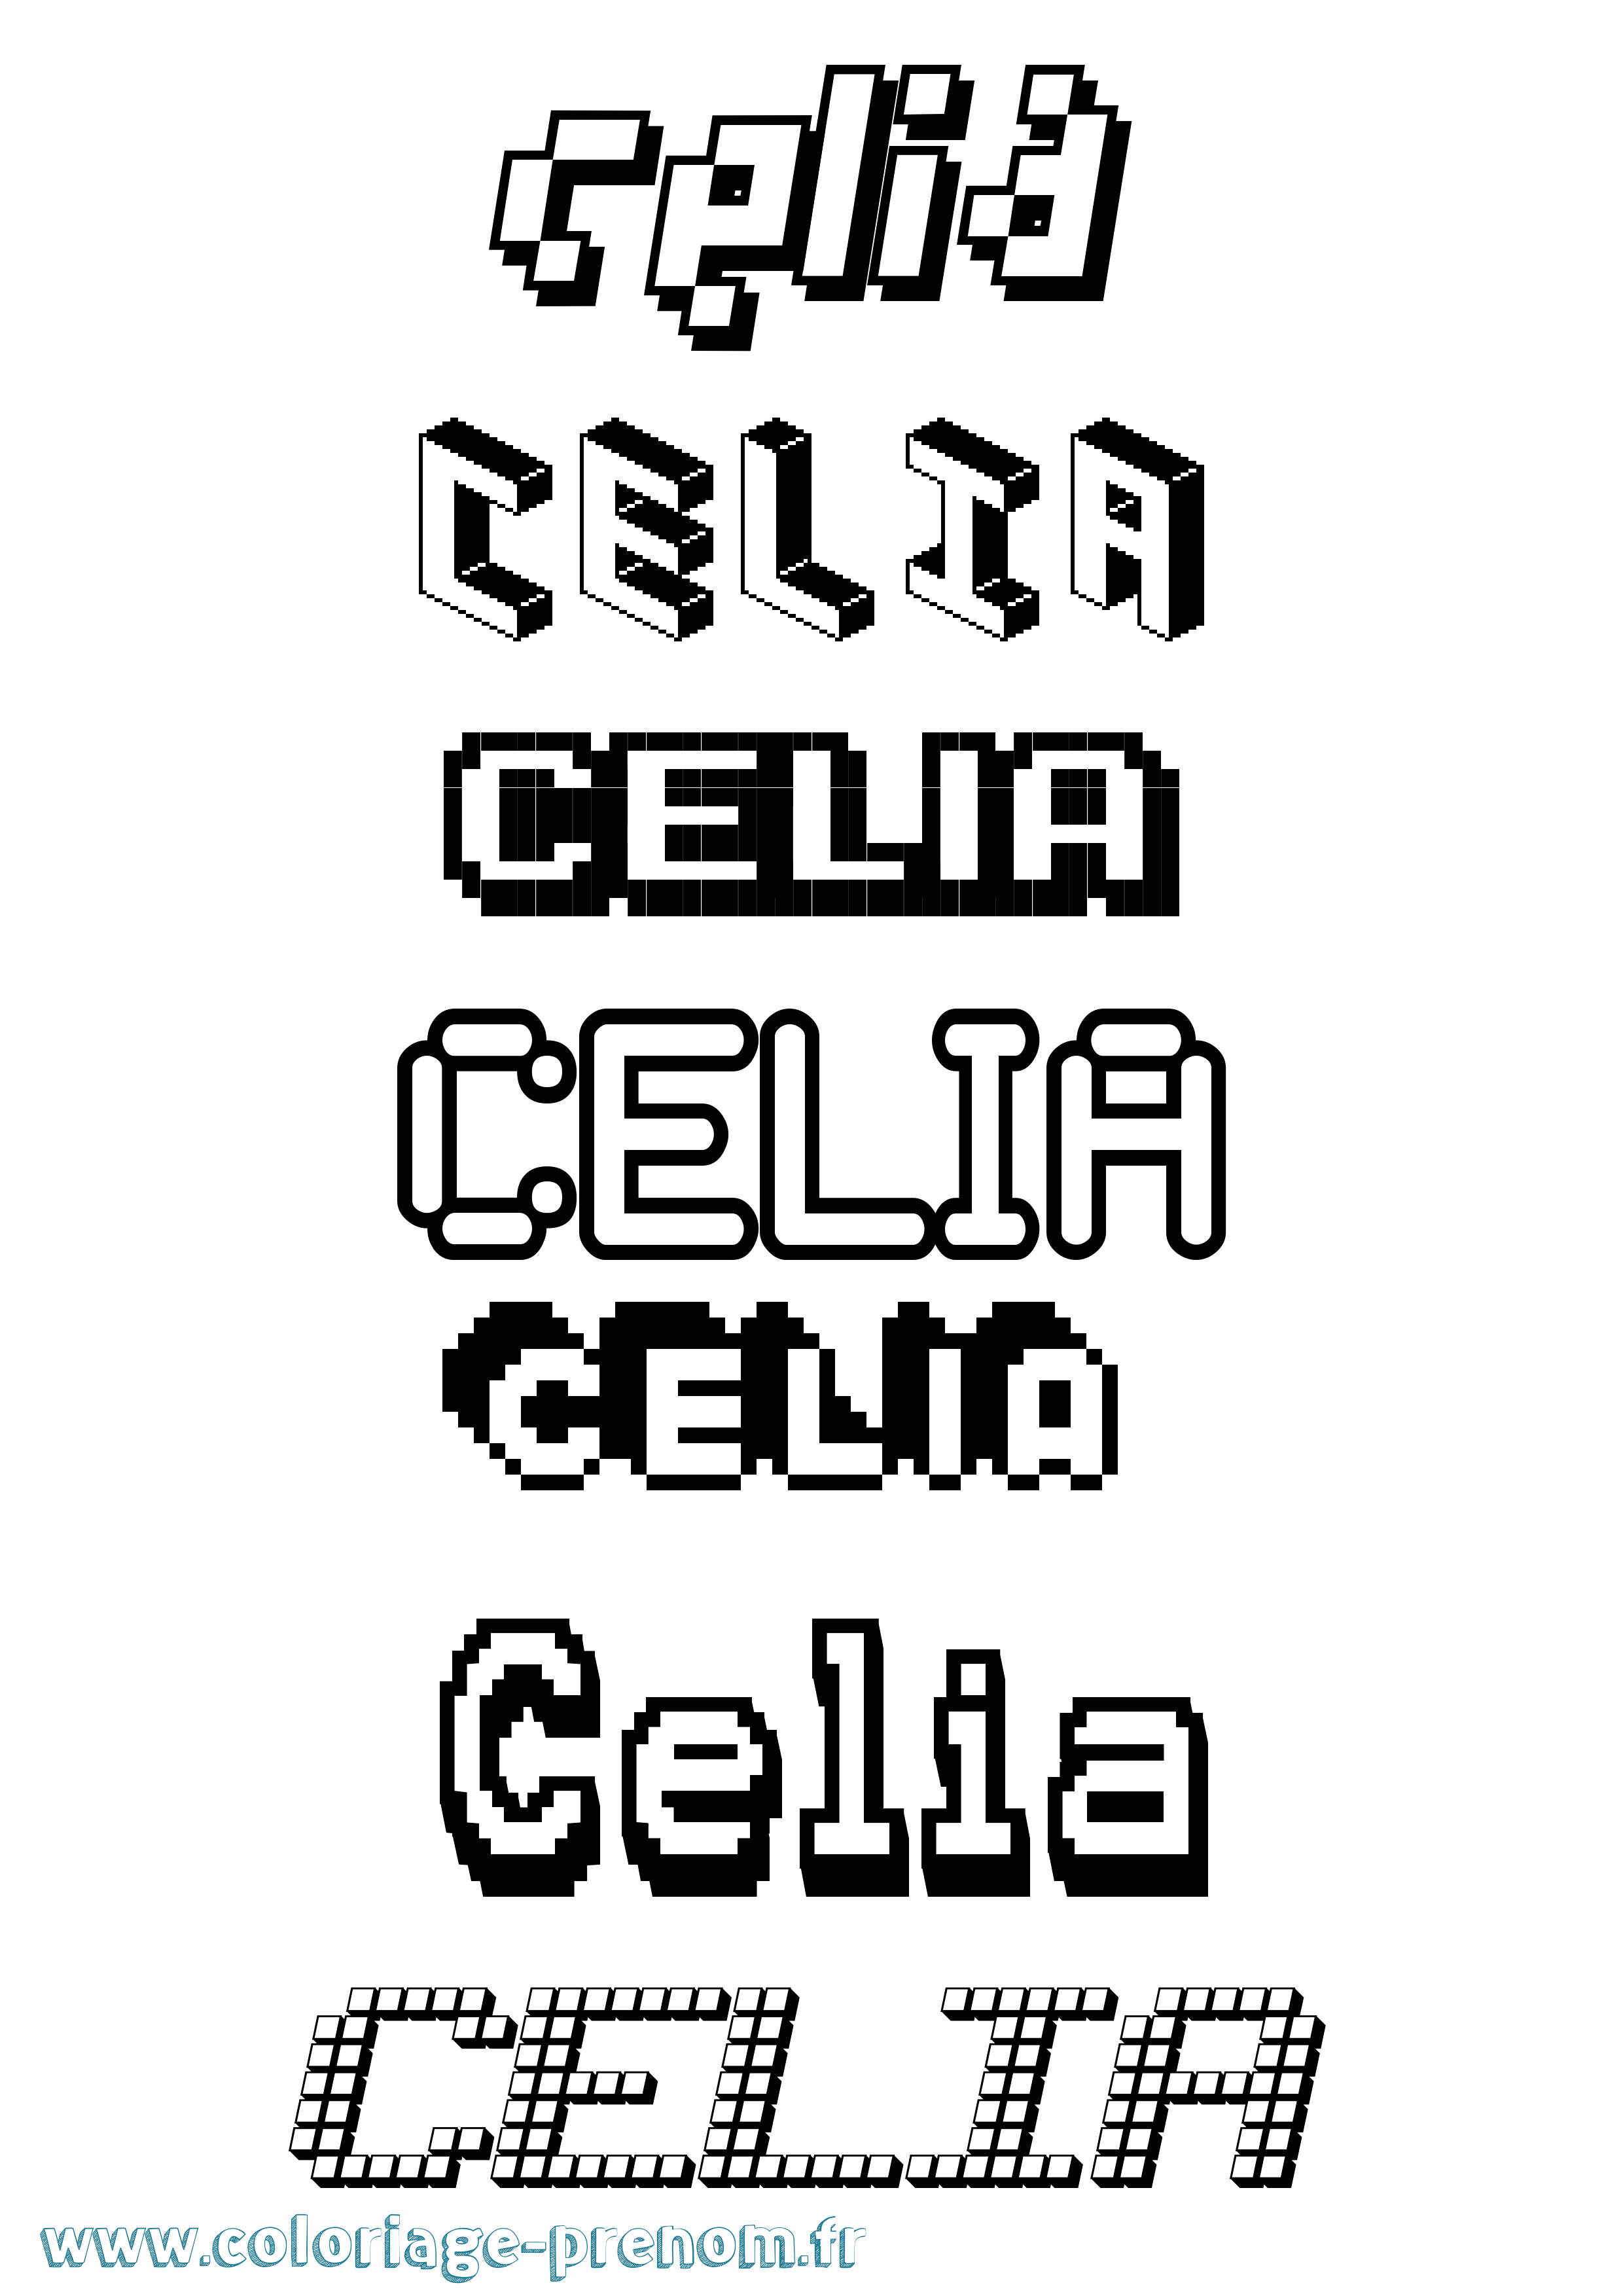 Coloriage prénom Celia